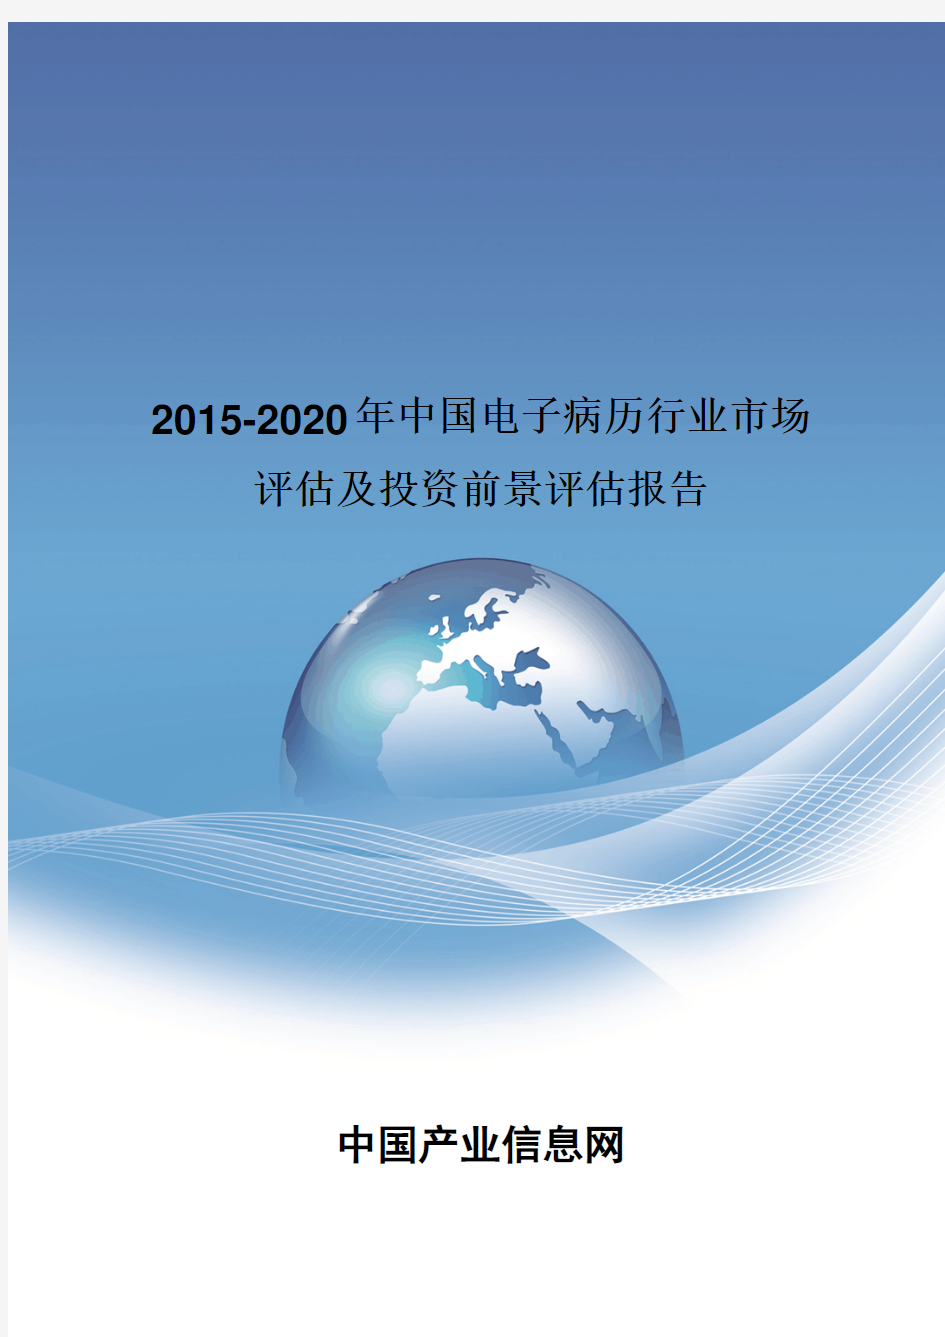 2015-2020年中国电子病历行业市场评估报告